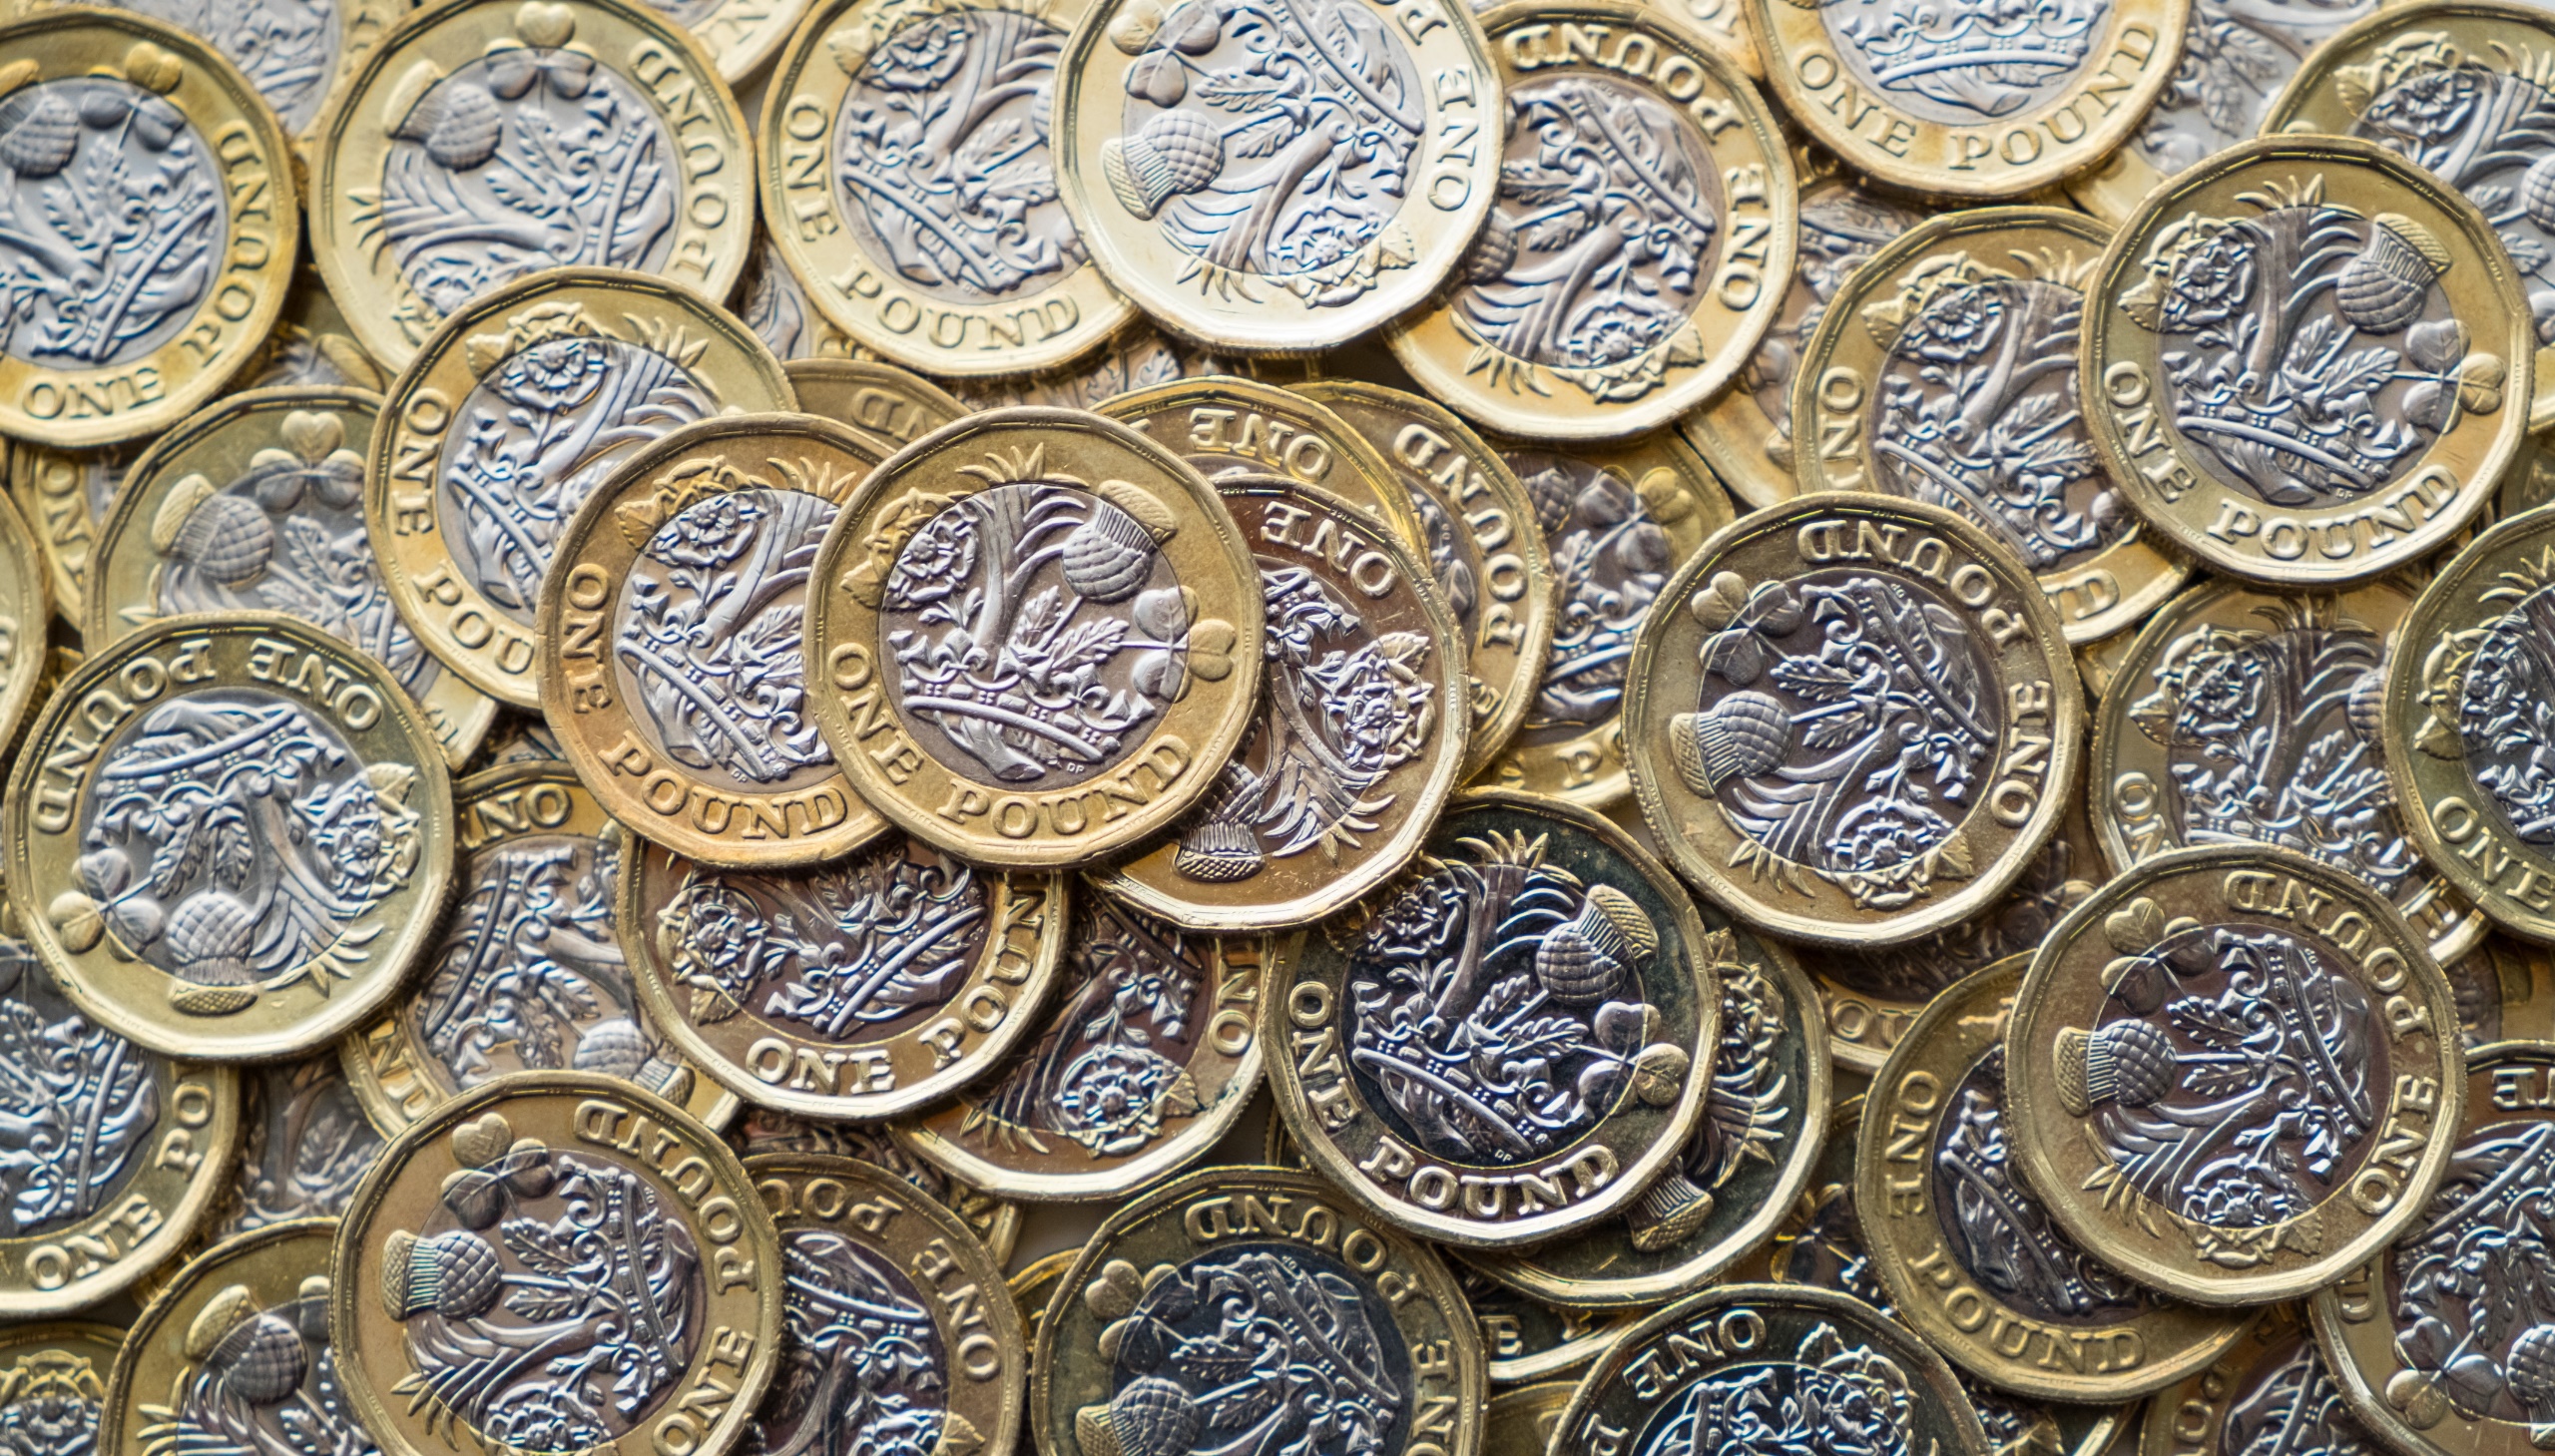 General 2560x1459 metal money coins British Pound top view